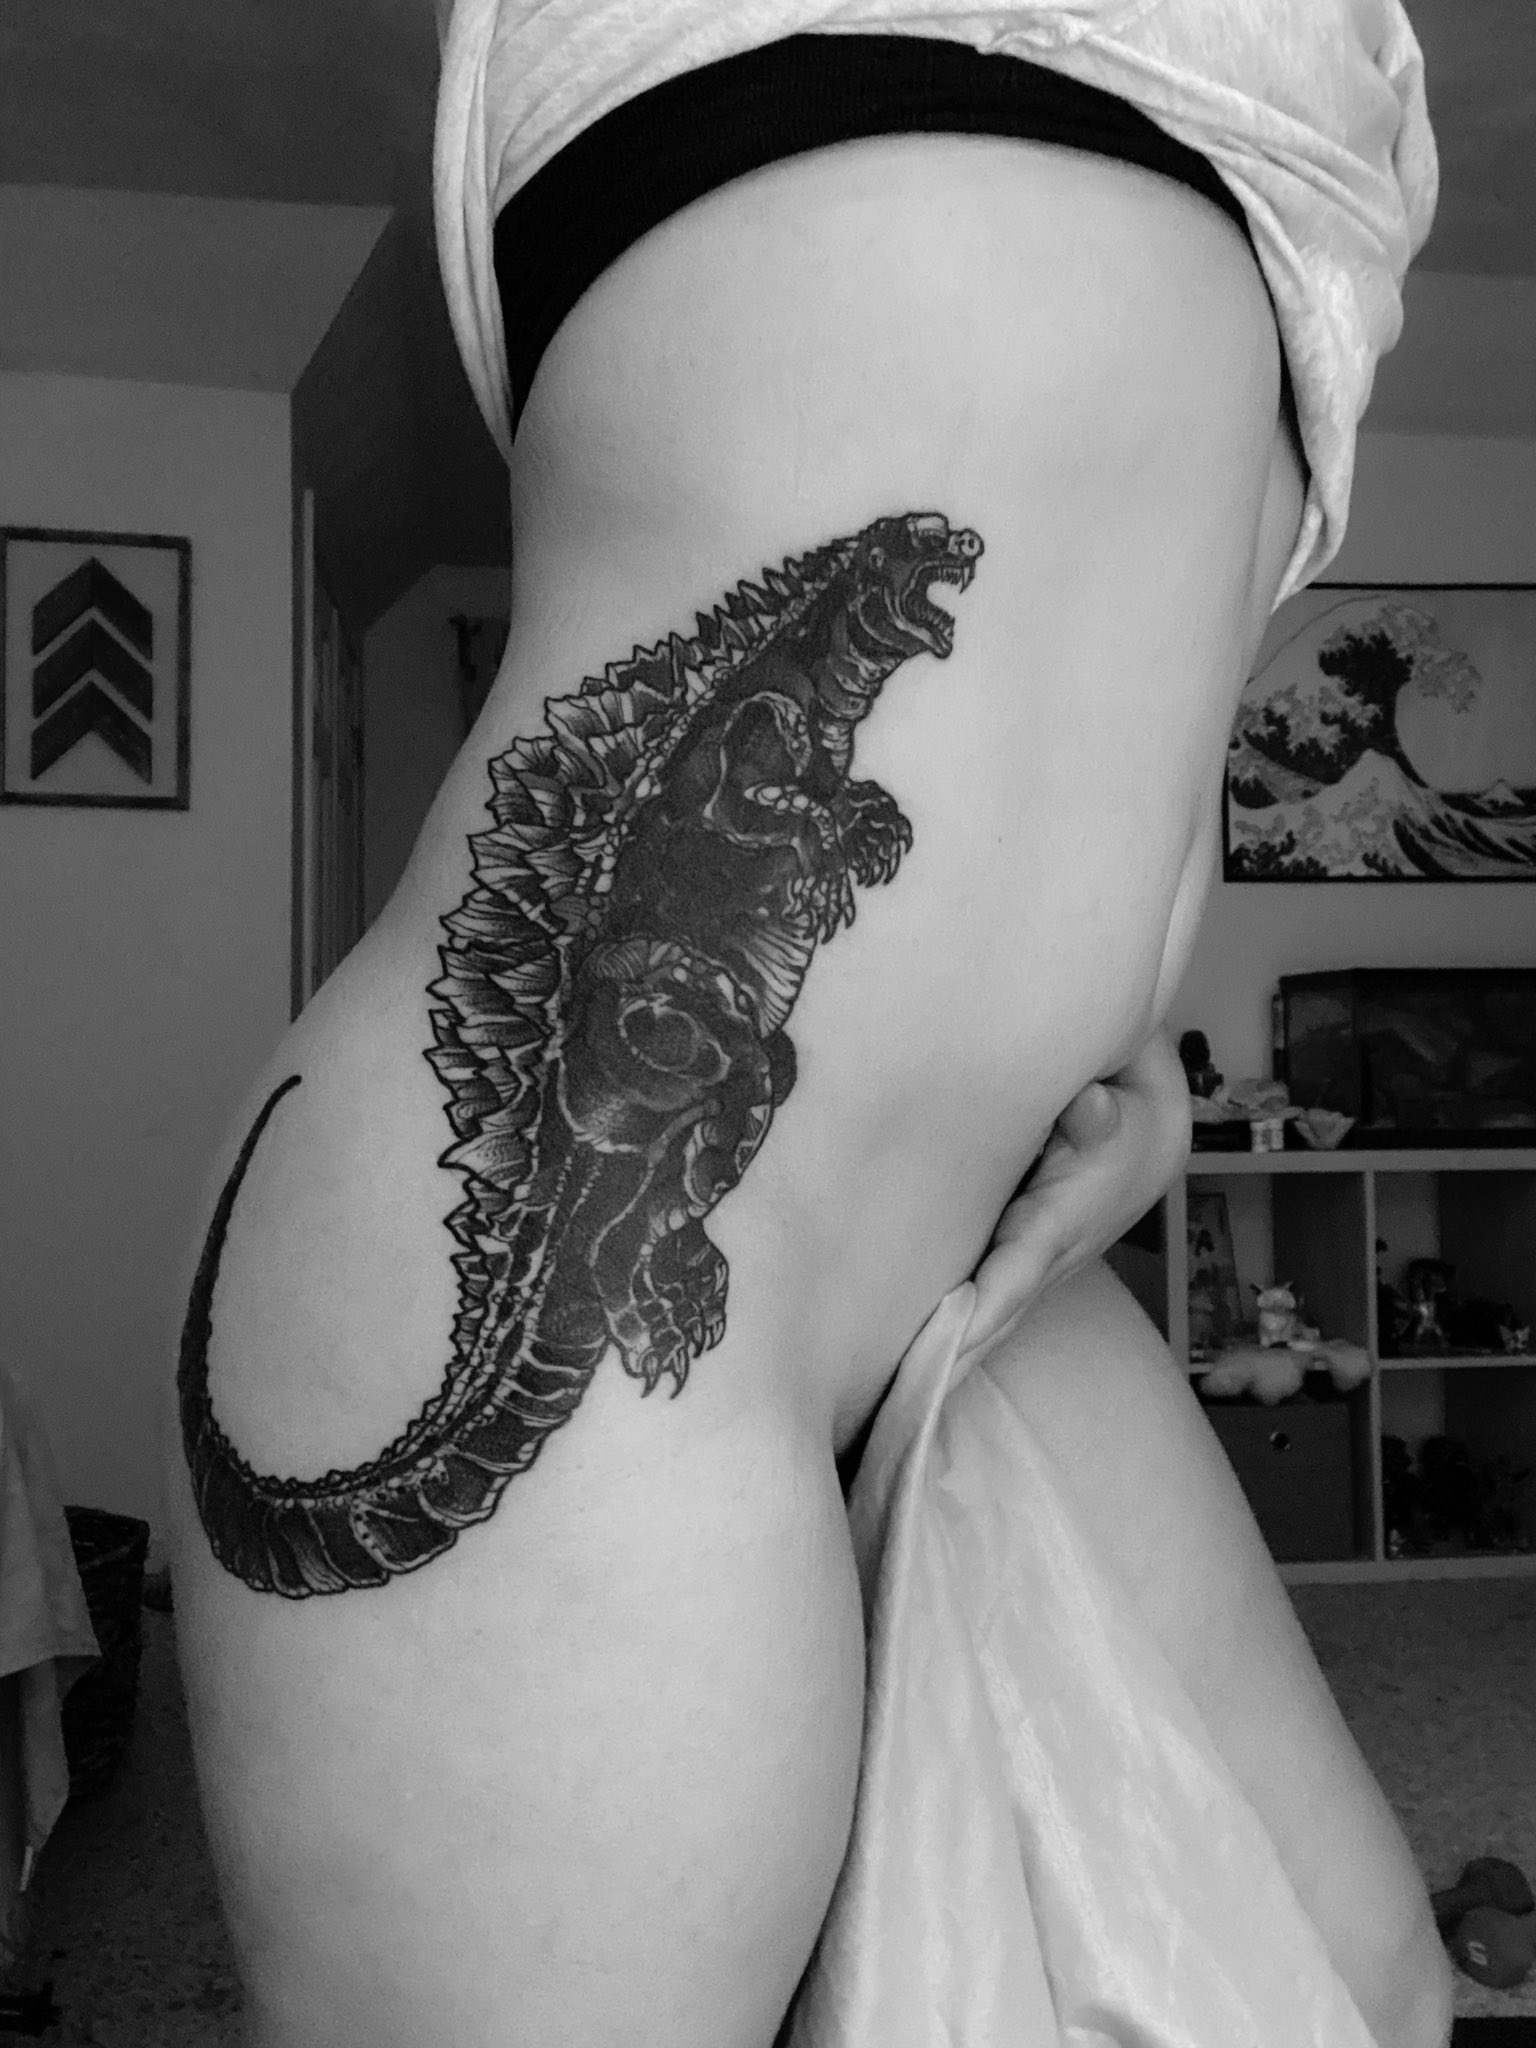 Godzilla tattoo | Godzilla tattoo, Tattoos, Godzilla